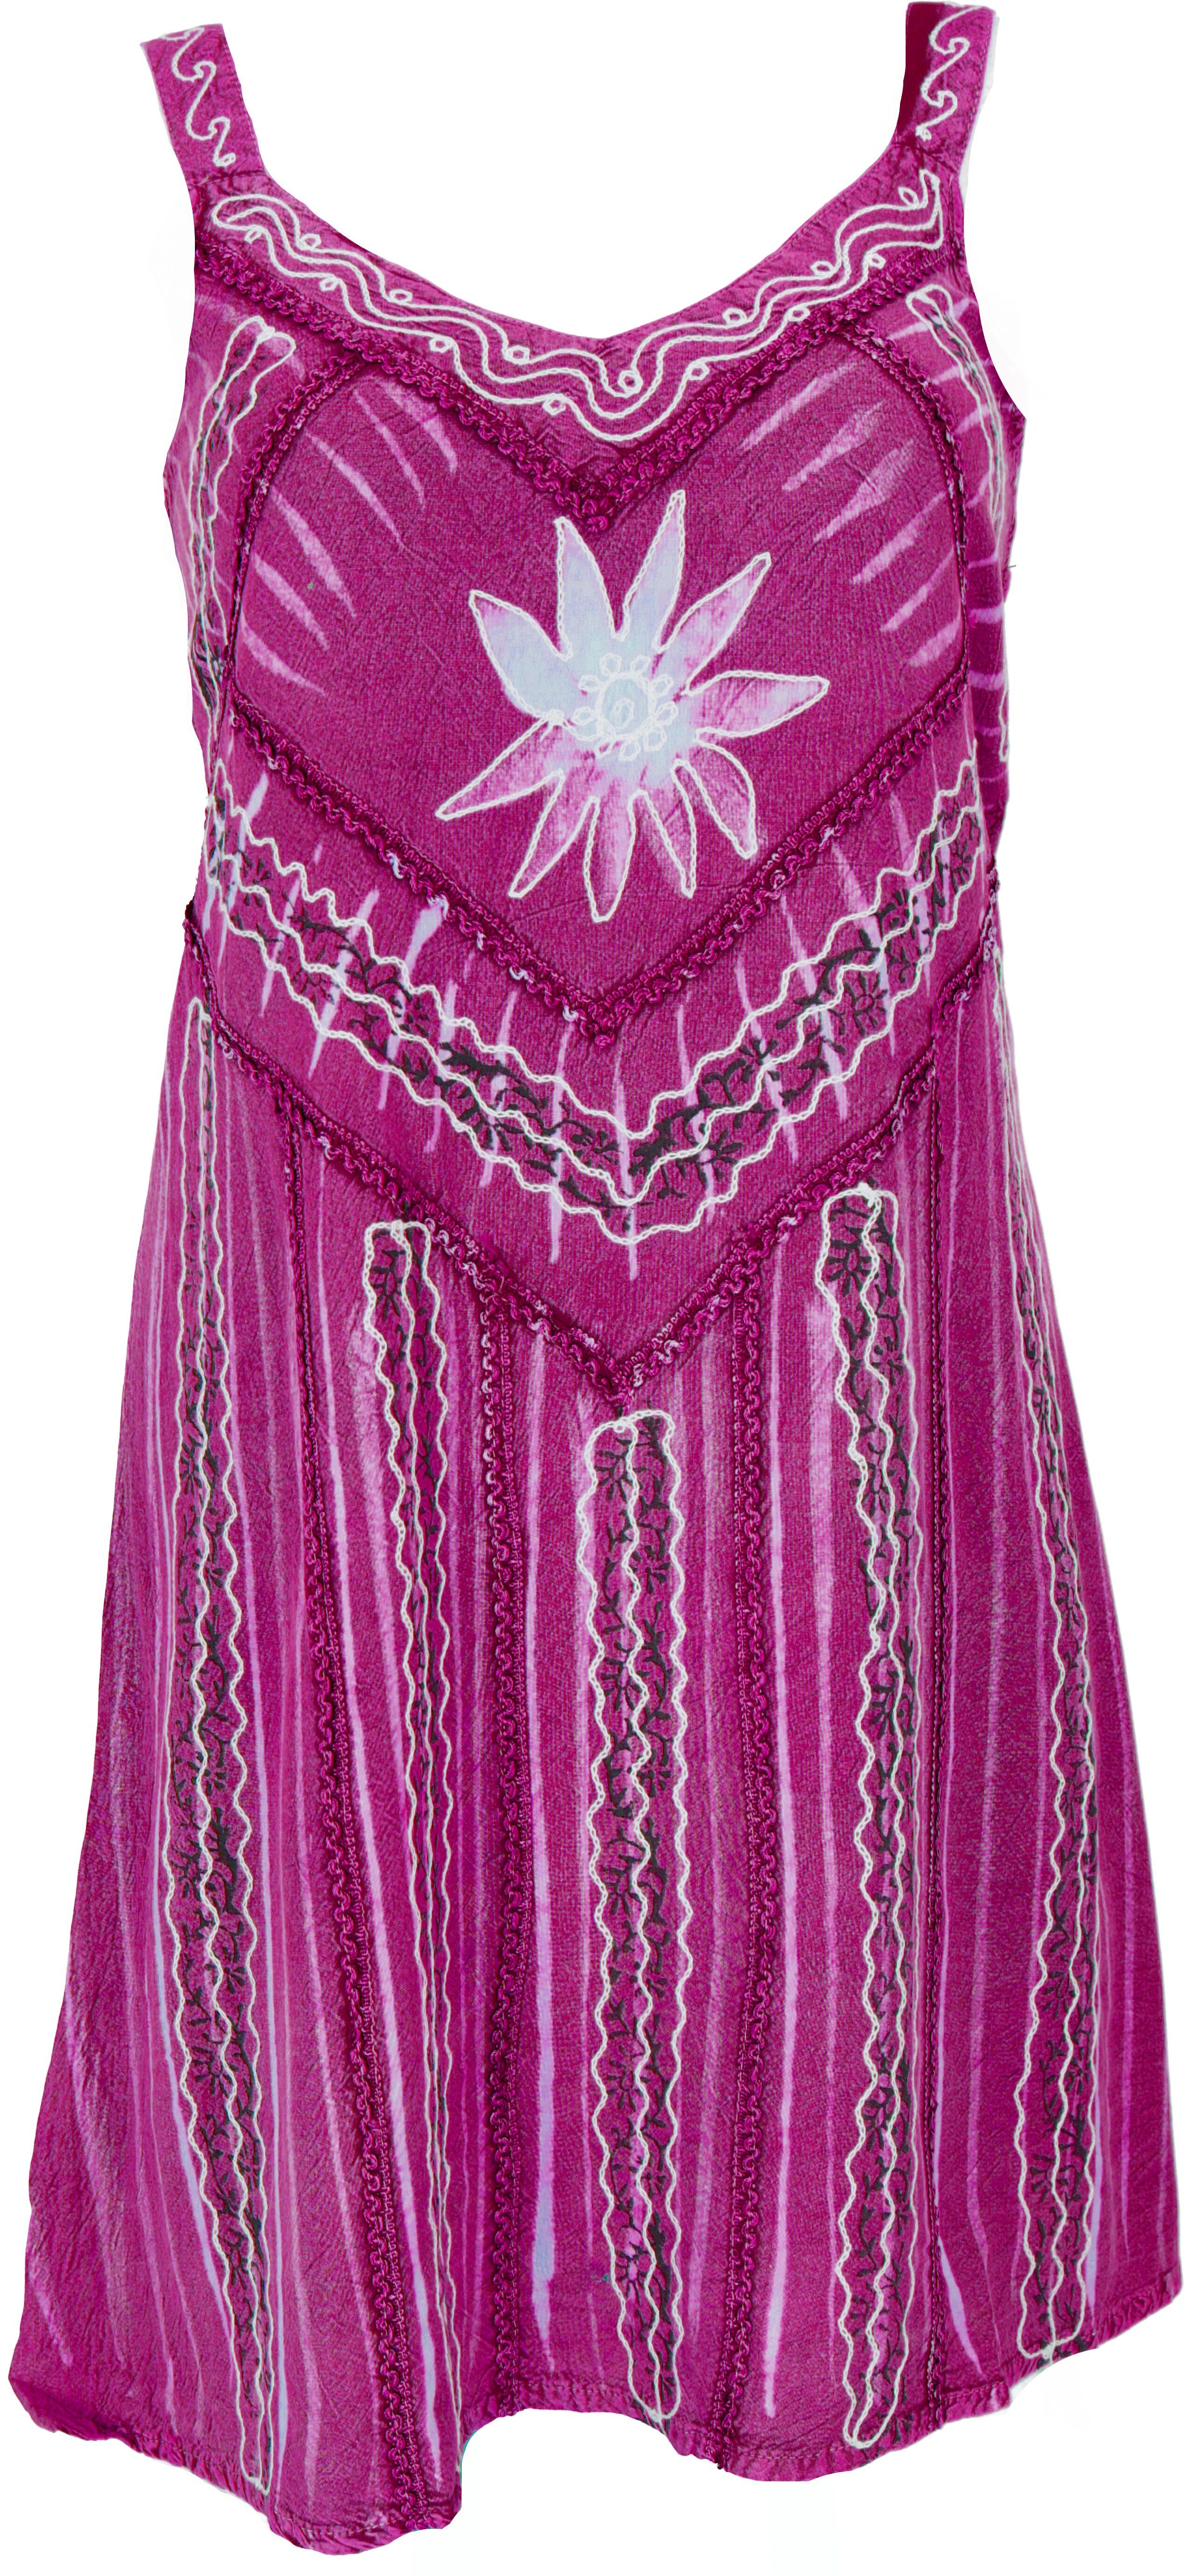 Guru-Shop Midikleid Besticktes indisches Minikleid Boho chic,.. alternative Bekleidung pink Design 6